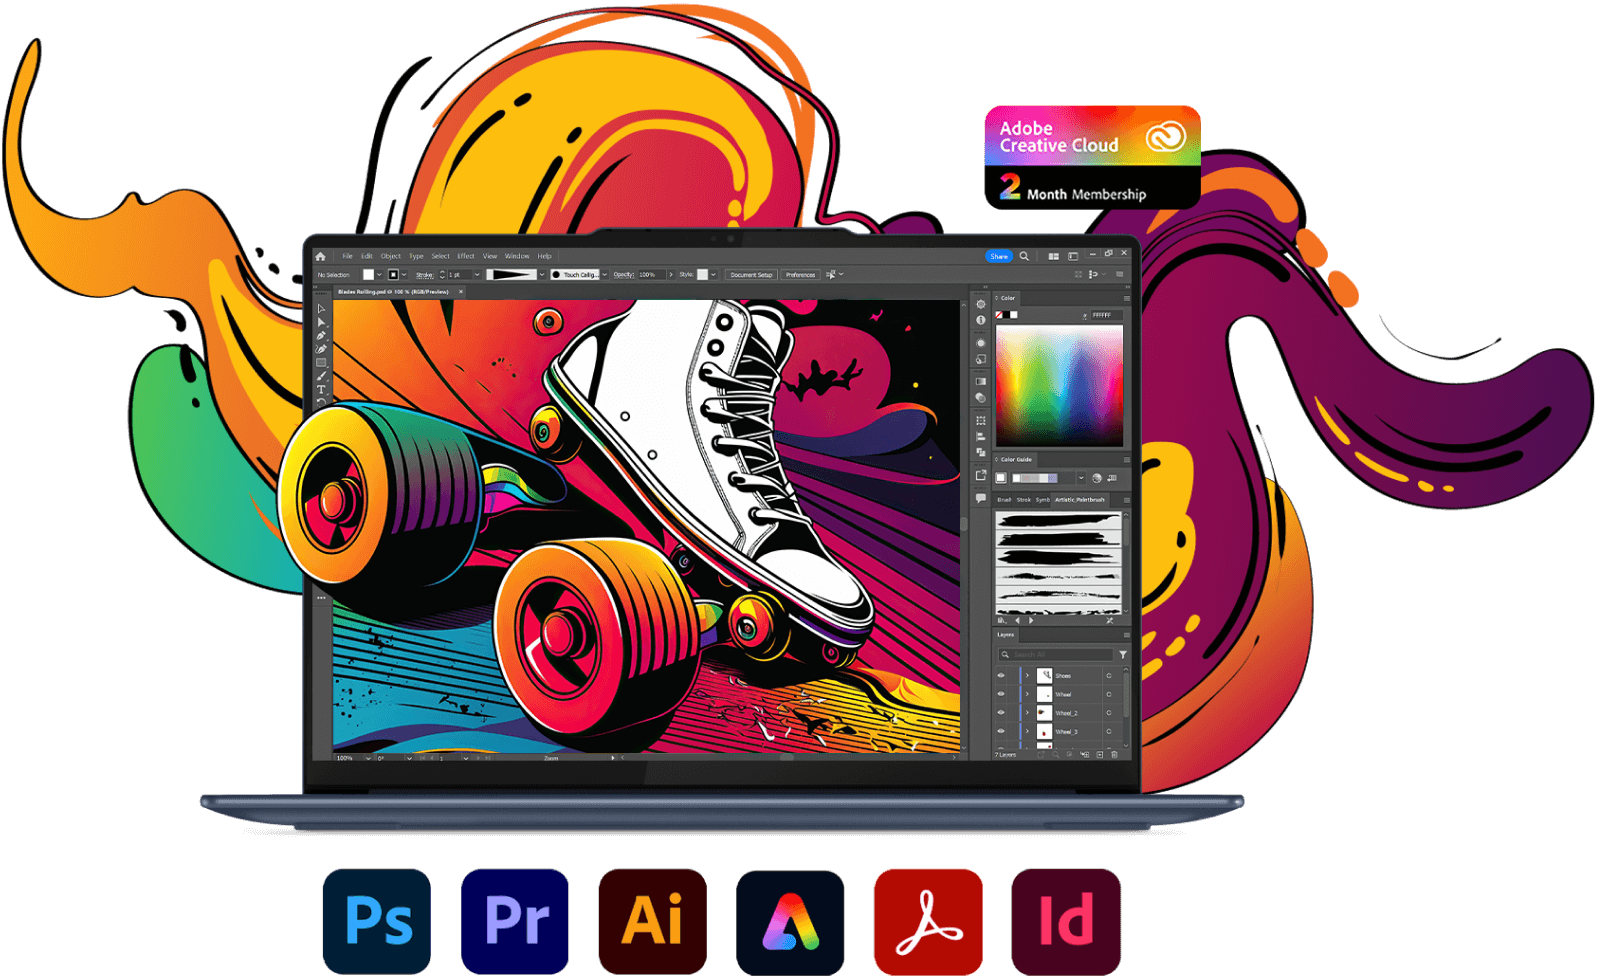 Ordinateur portable Lenovo Yoga de face, avec Photoshop à l’écran, et différentes icônes de l’application Adobe Creative Cloud.